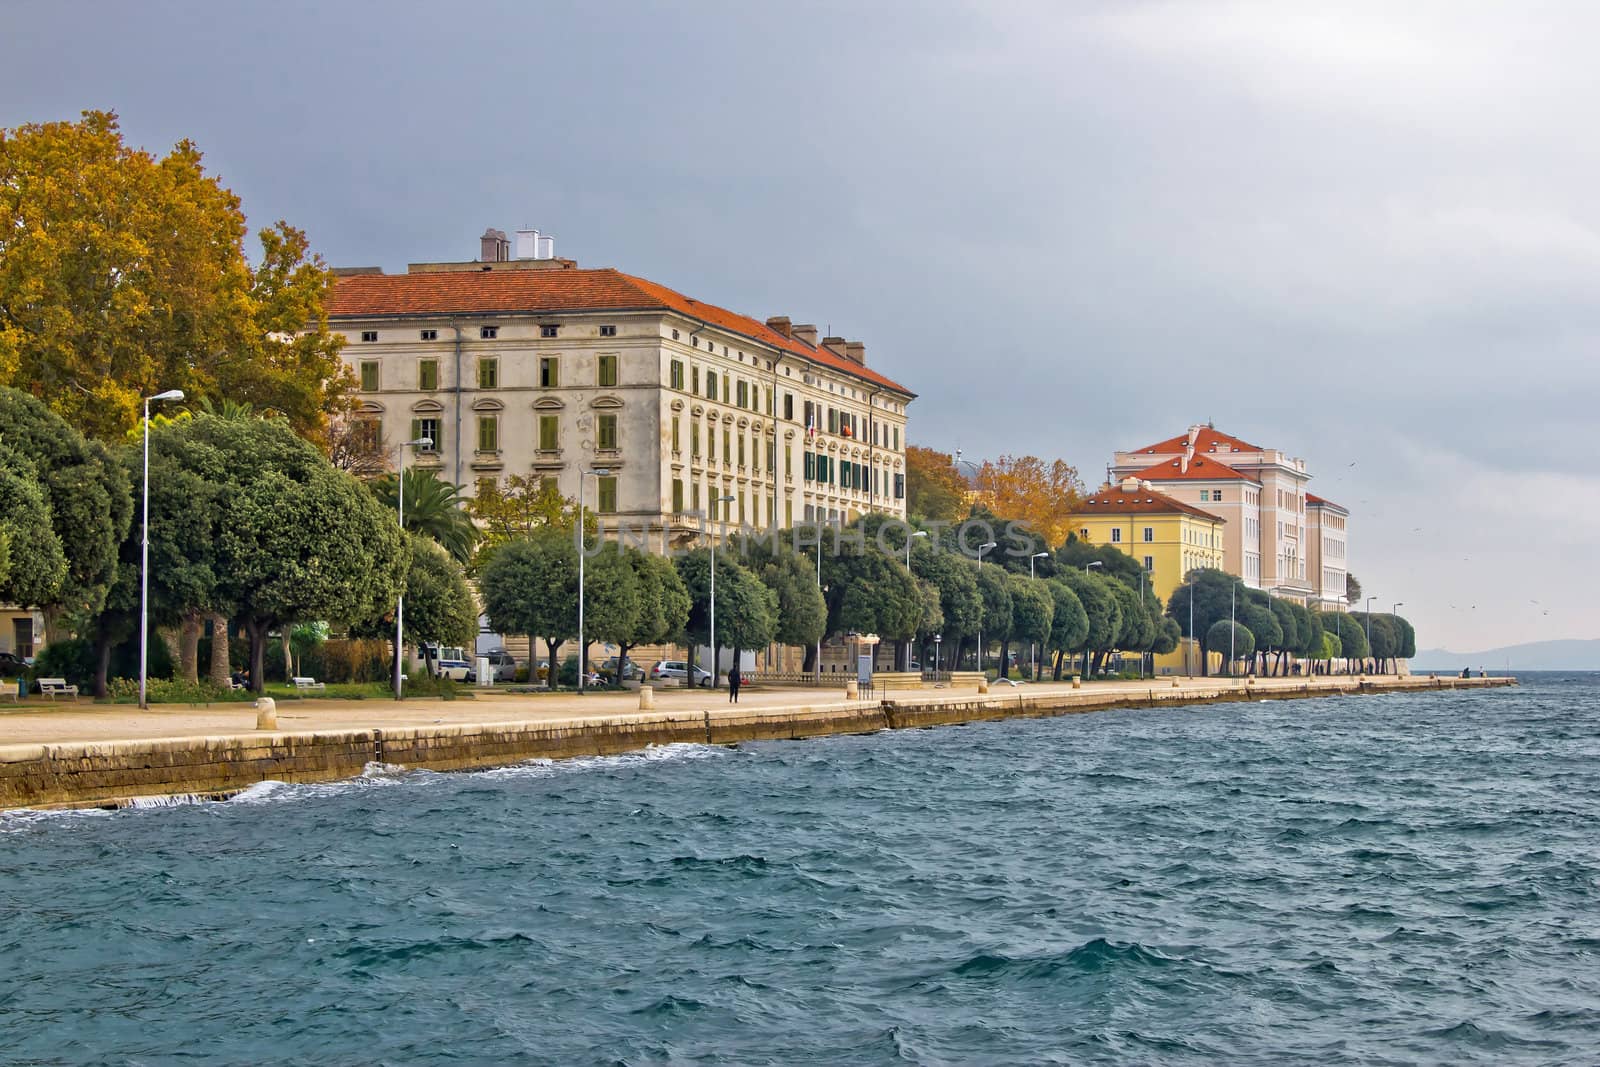 Beautiful Adriatic Town of Zadar waterfront by xbrchx